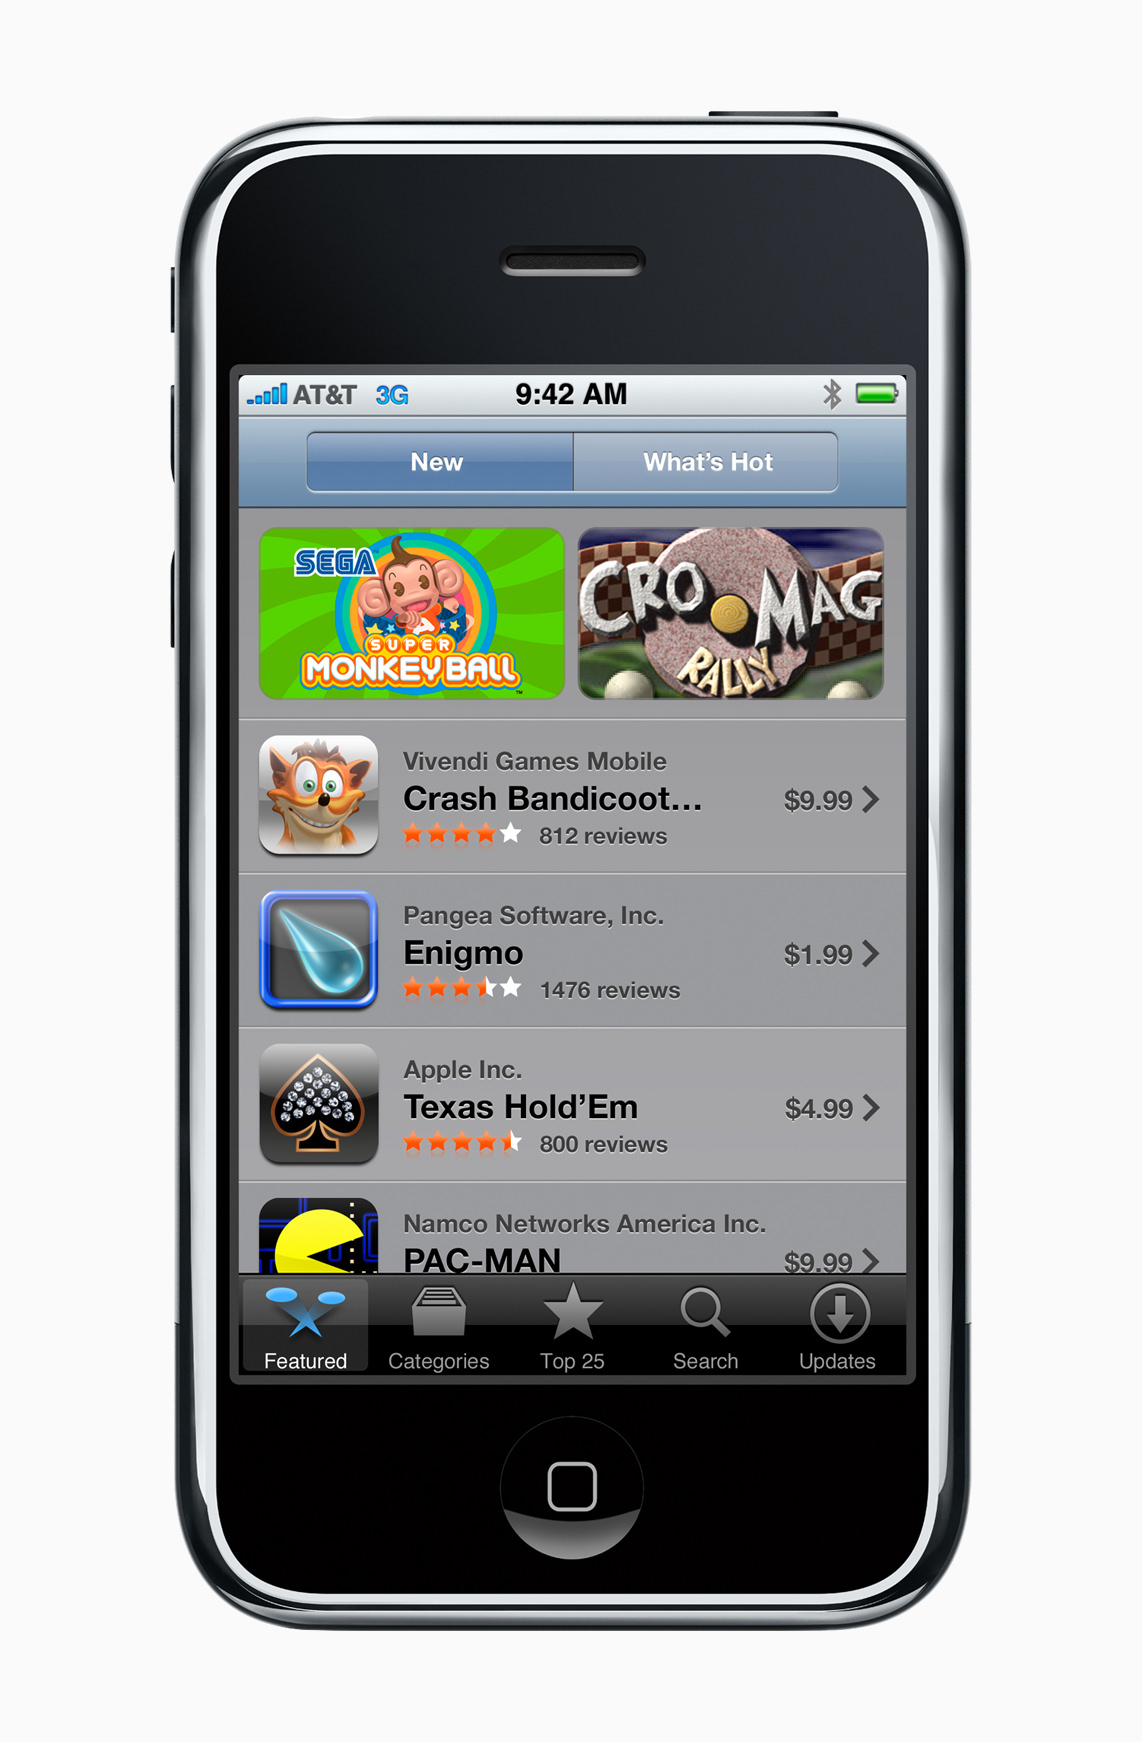 alt="App Store in 2008"